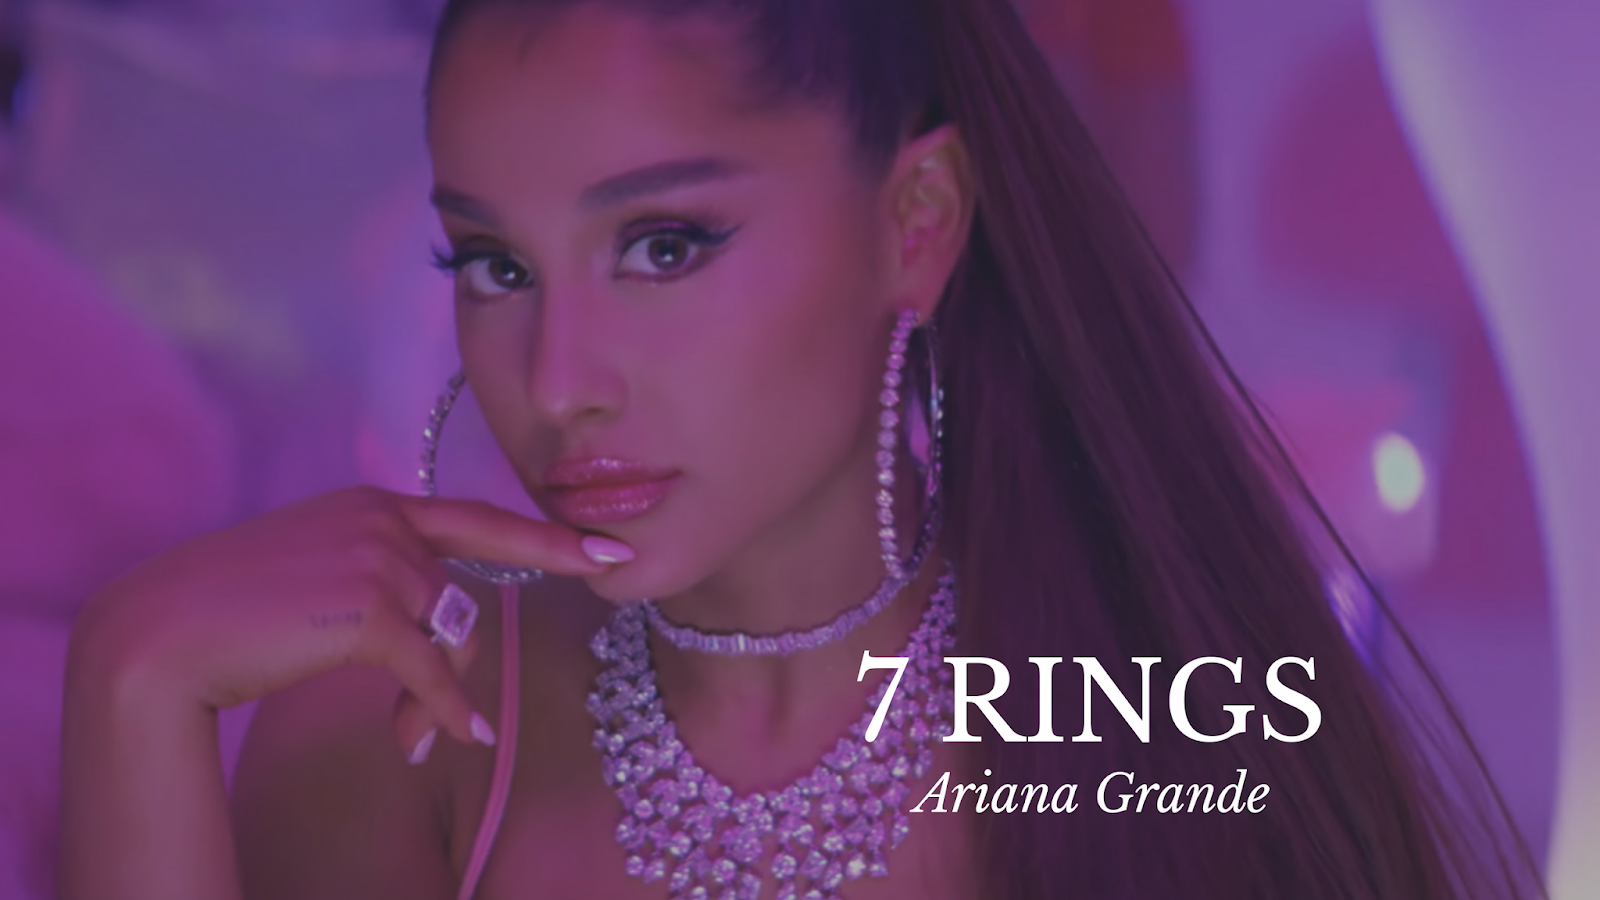 Lirik Lagu 7 Rings - Ariana Grande dan Terjemahannya. 